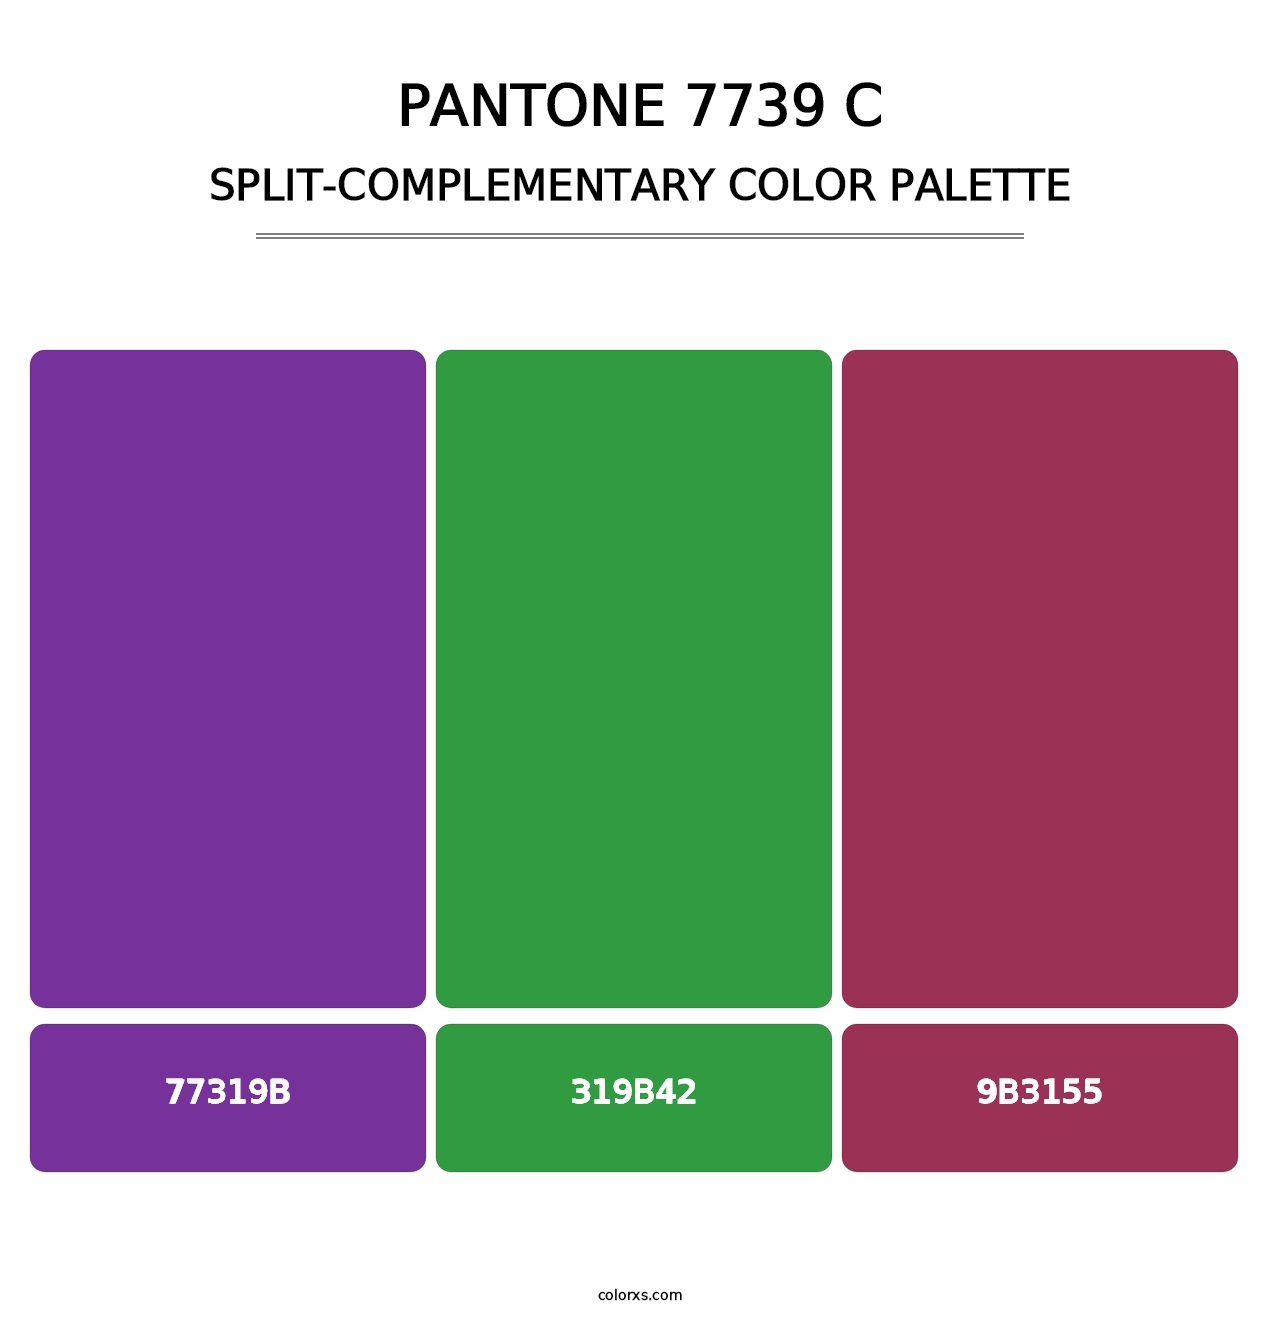 PANTONE 7739 C - Split-Complementary Color Palette